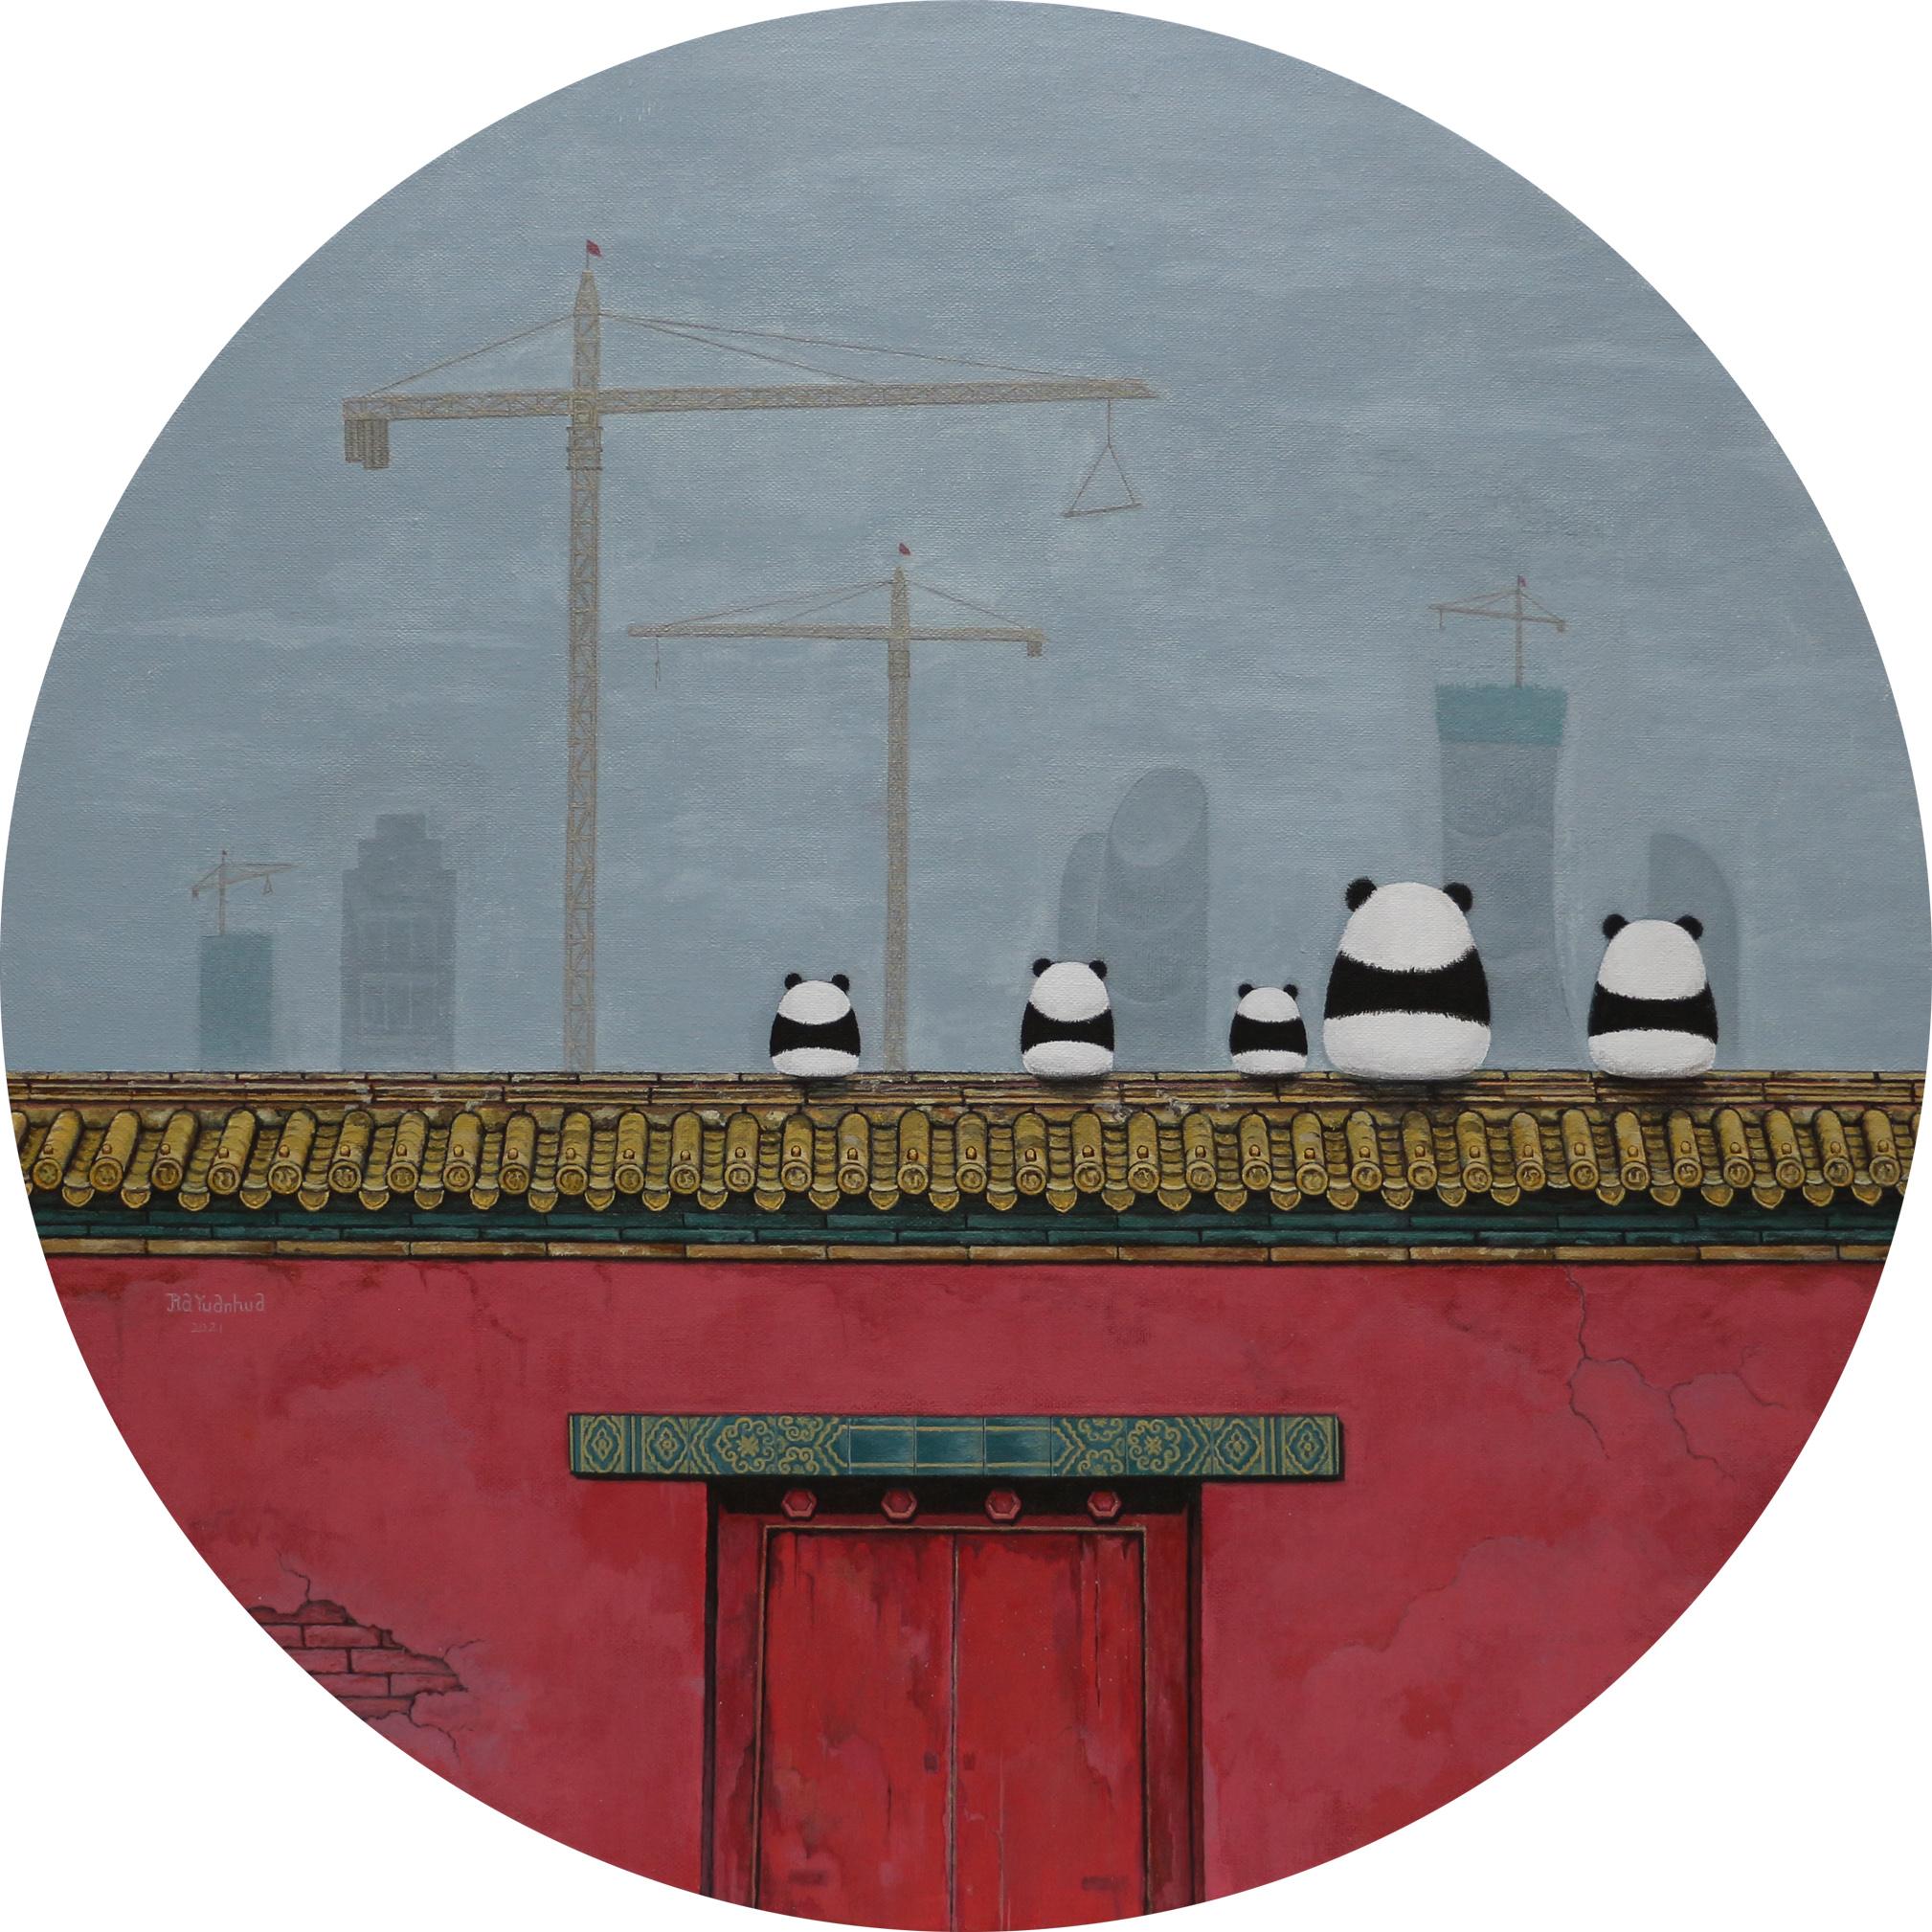 Chinese Contemporary Art by Jia Yuan-Hua - Sightseeing No.7